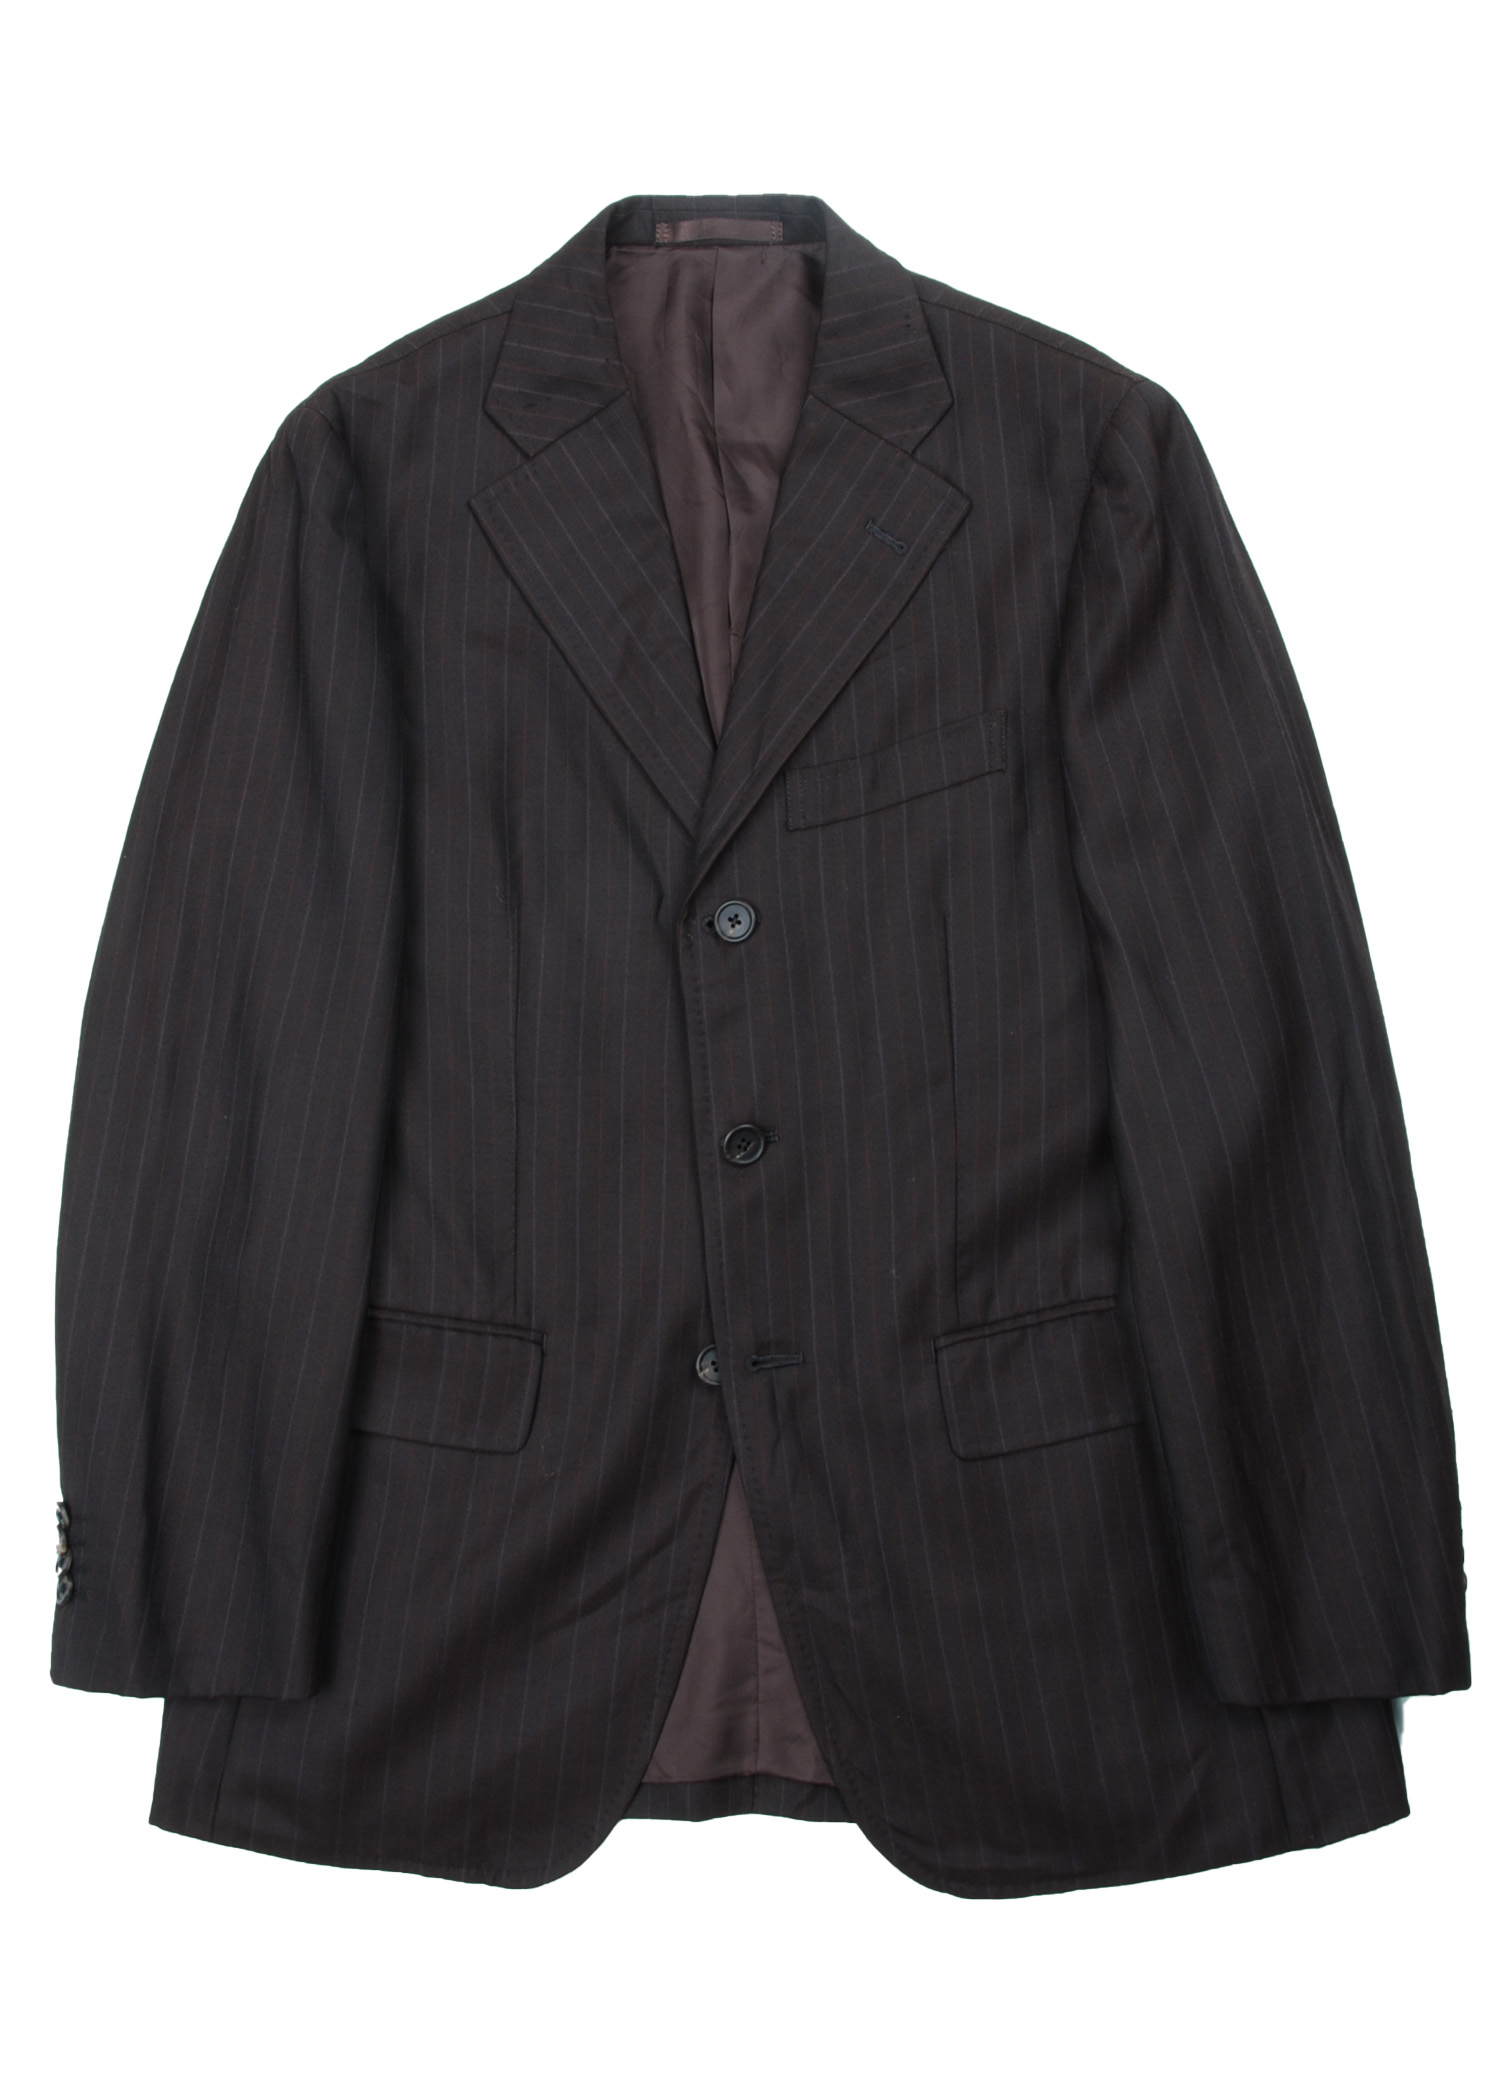 Paul Smith stripe jacket (fabric by Ermenegildo Zegna)